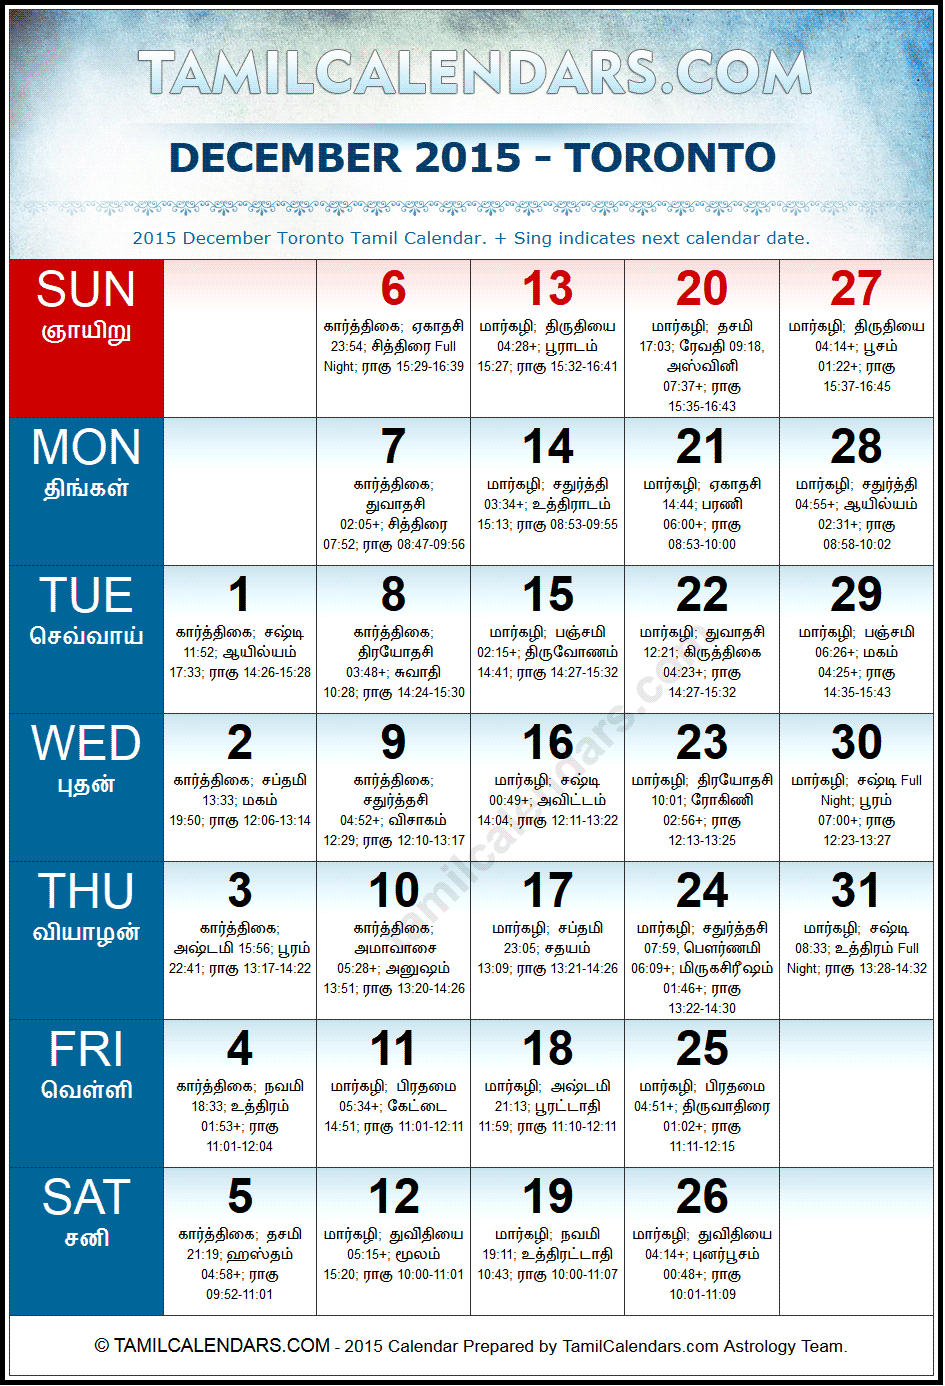 December 2015 Tamil Calendar for Toronto, Canada